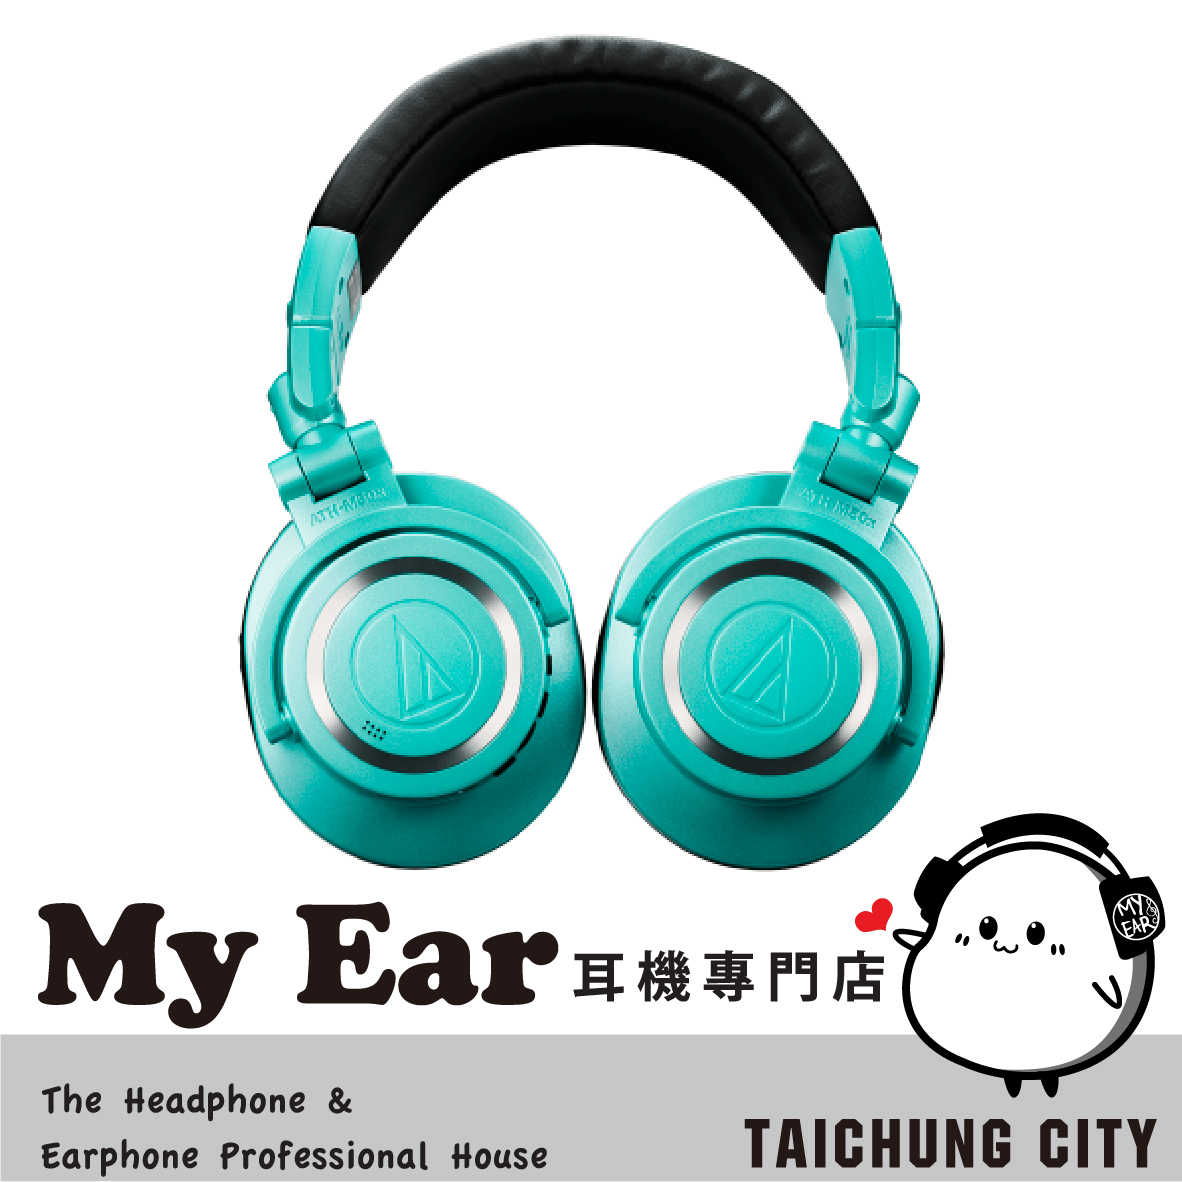 『預購』鐵三角 ATH-M50xBT2 內建擴大機 無線 耳罩式 耳機 藍芽 冰藍色 IB | My Ear 耳機專門店